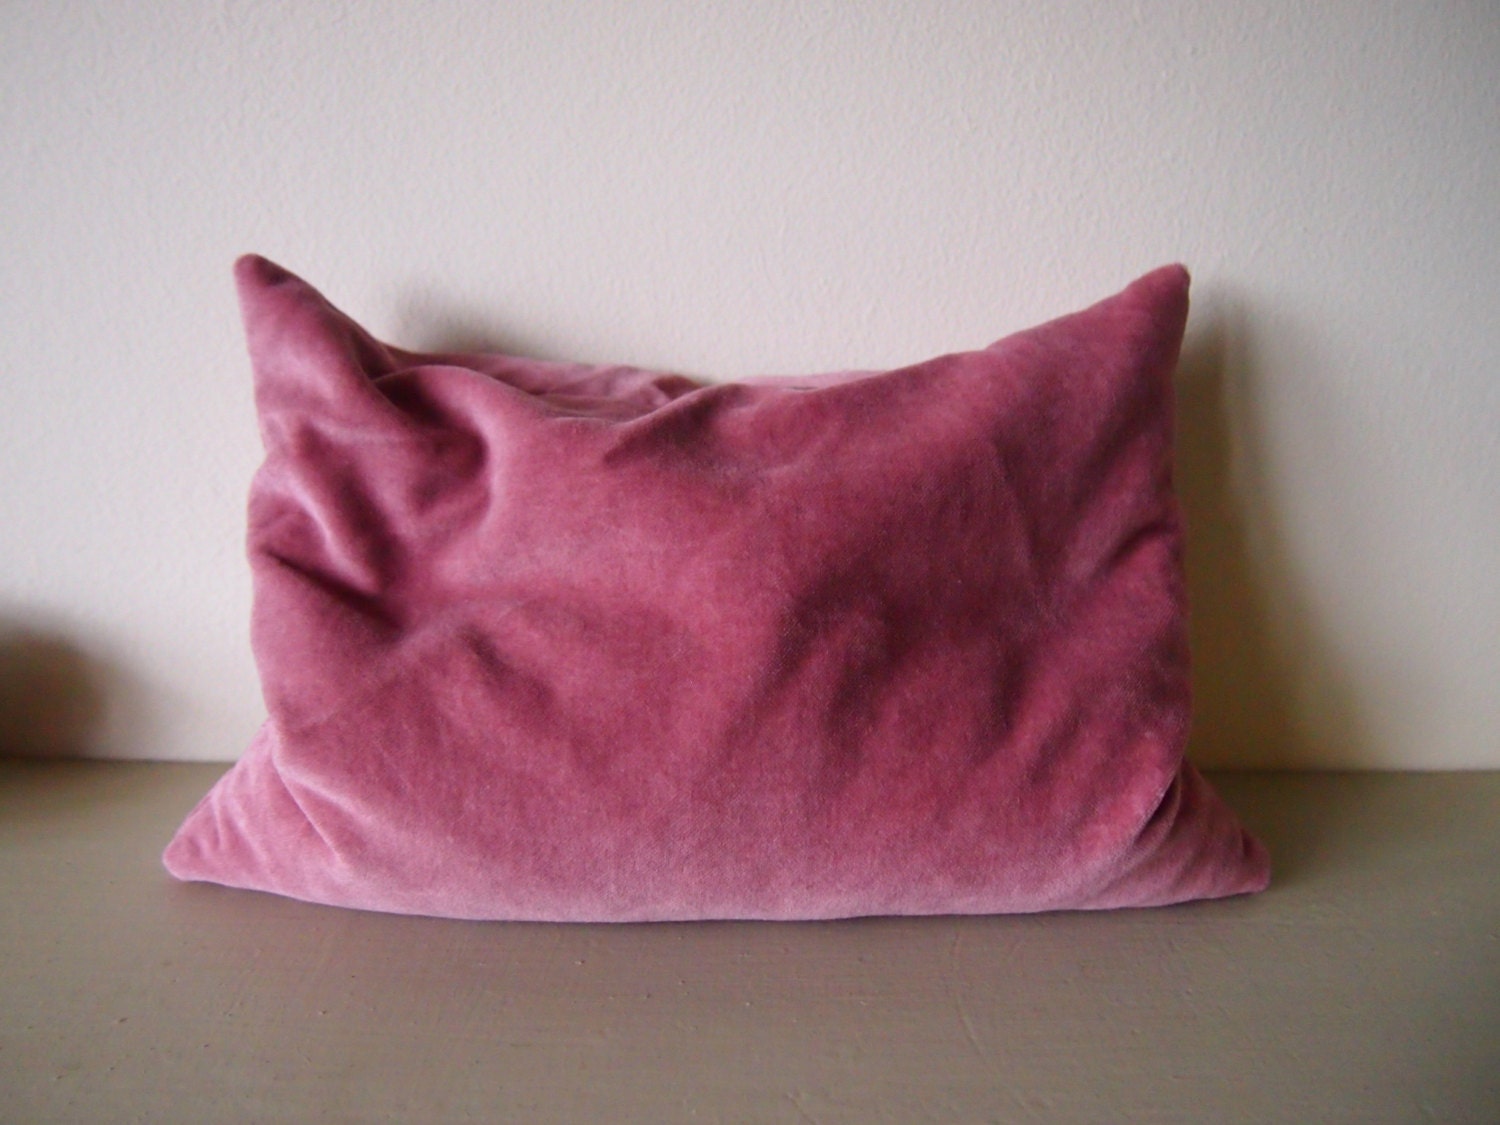 Pink pillow handmade vintage velvet cushion buckwheat hulls natural firm support